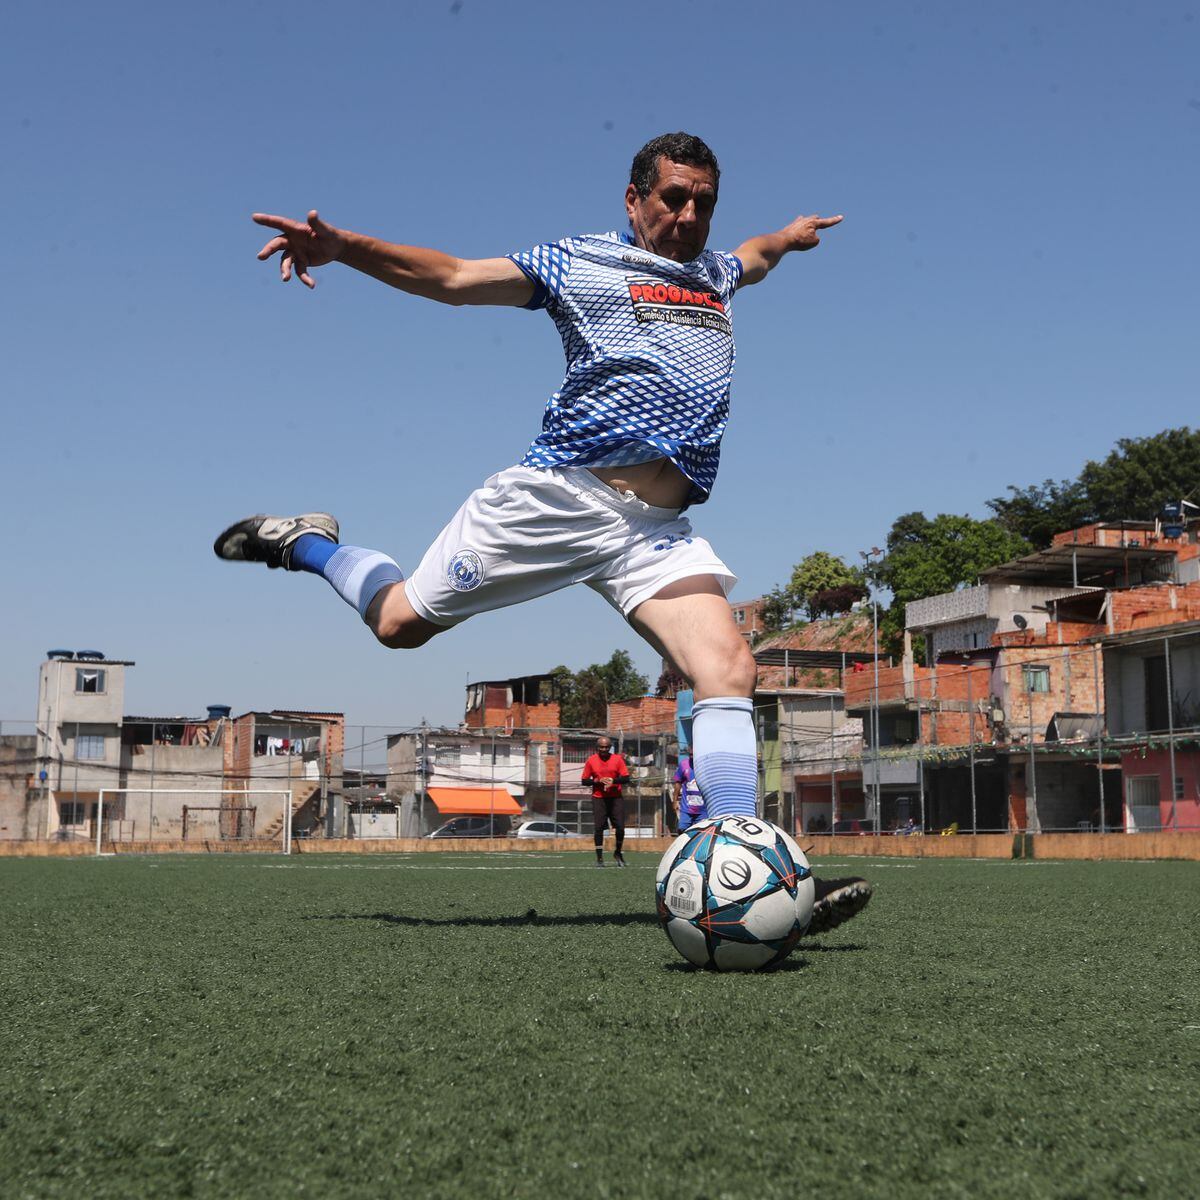 Sem preparo físico, futebol com amigos pode acabar em lesões - Notícias -  R7 Saúde